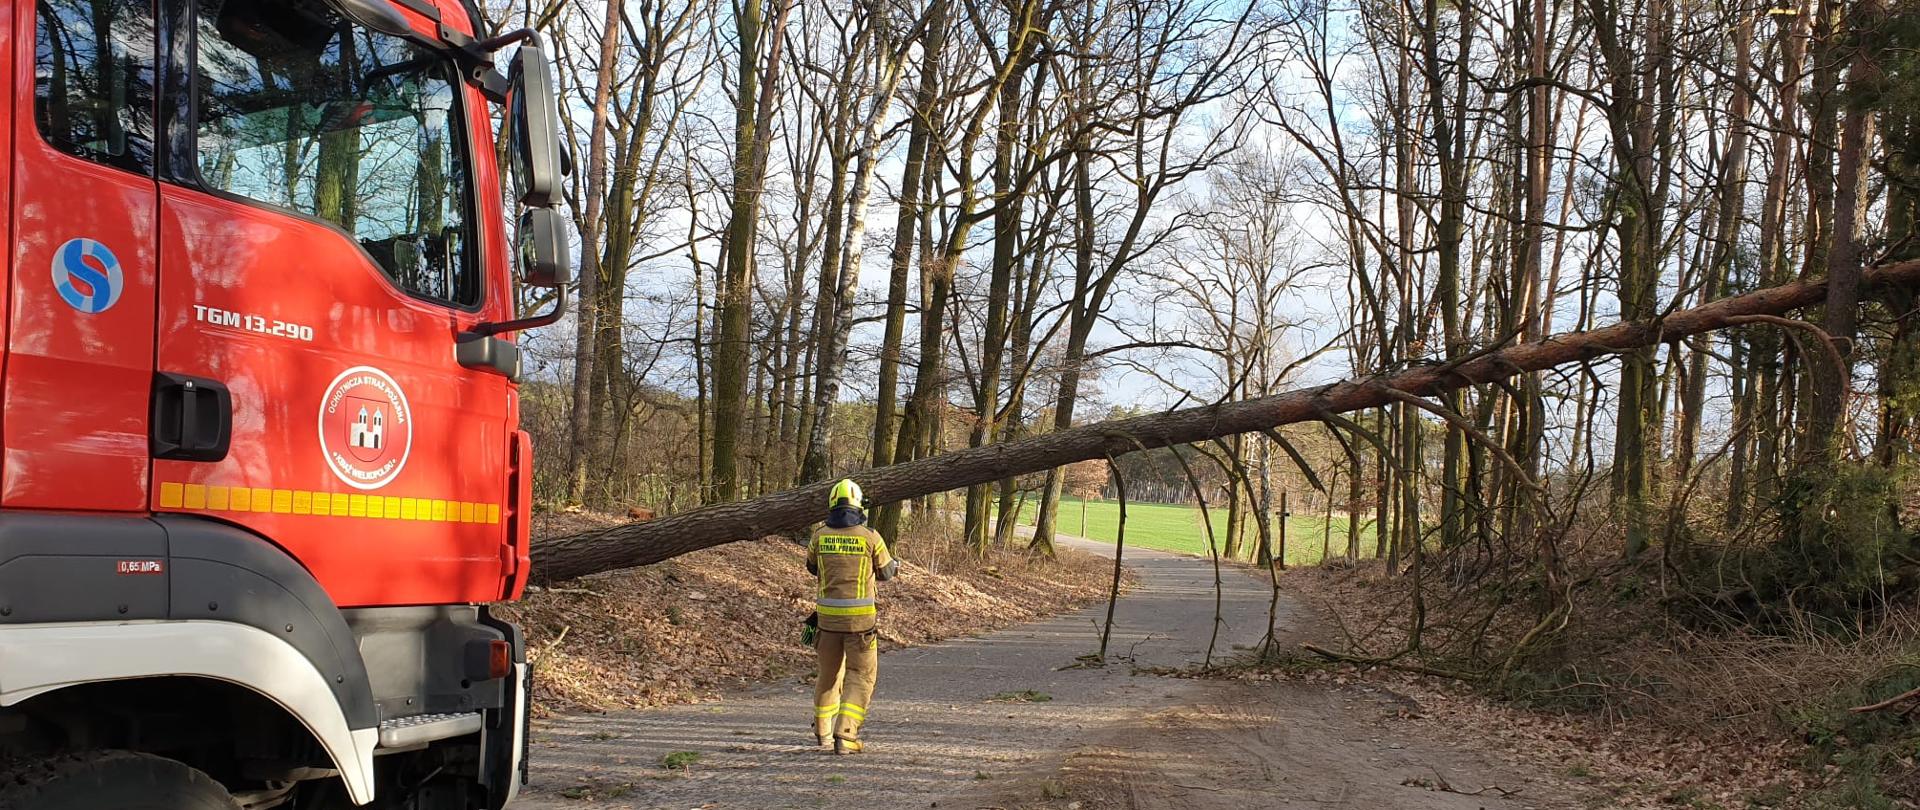 Ratownik OSP przeprowadzający rozpoznanie przed przystąpieniem do usunięcia drzewa blokującego drogę.